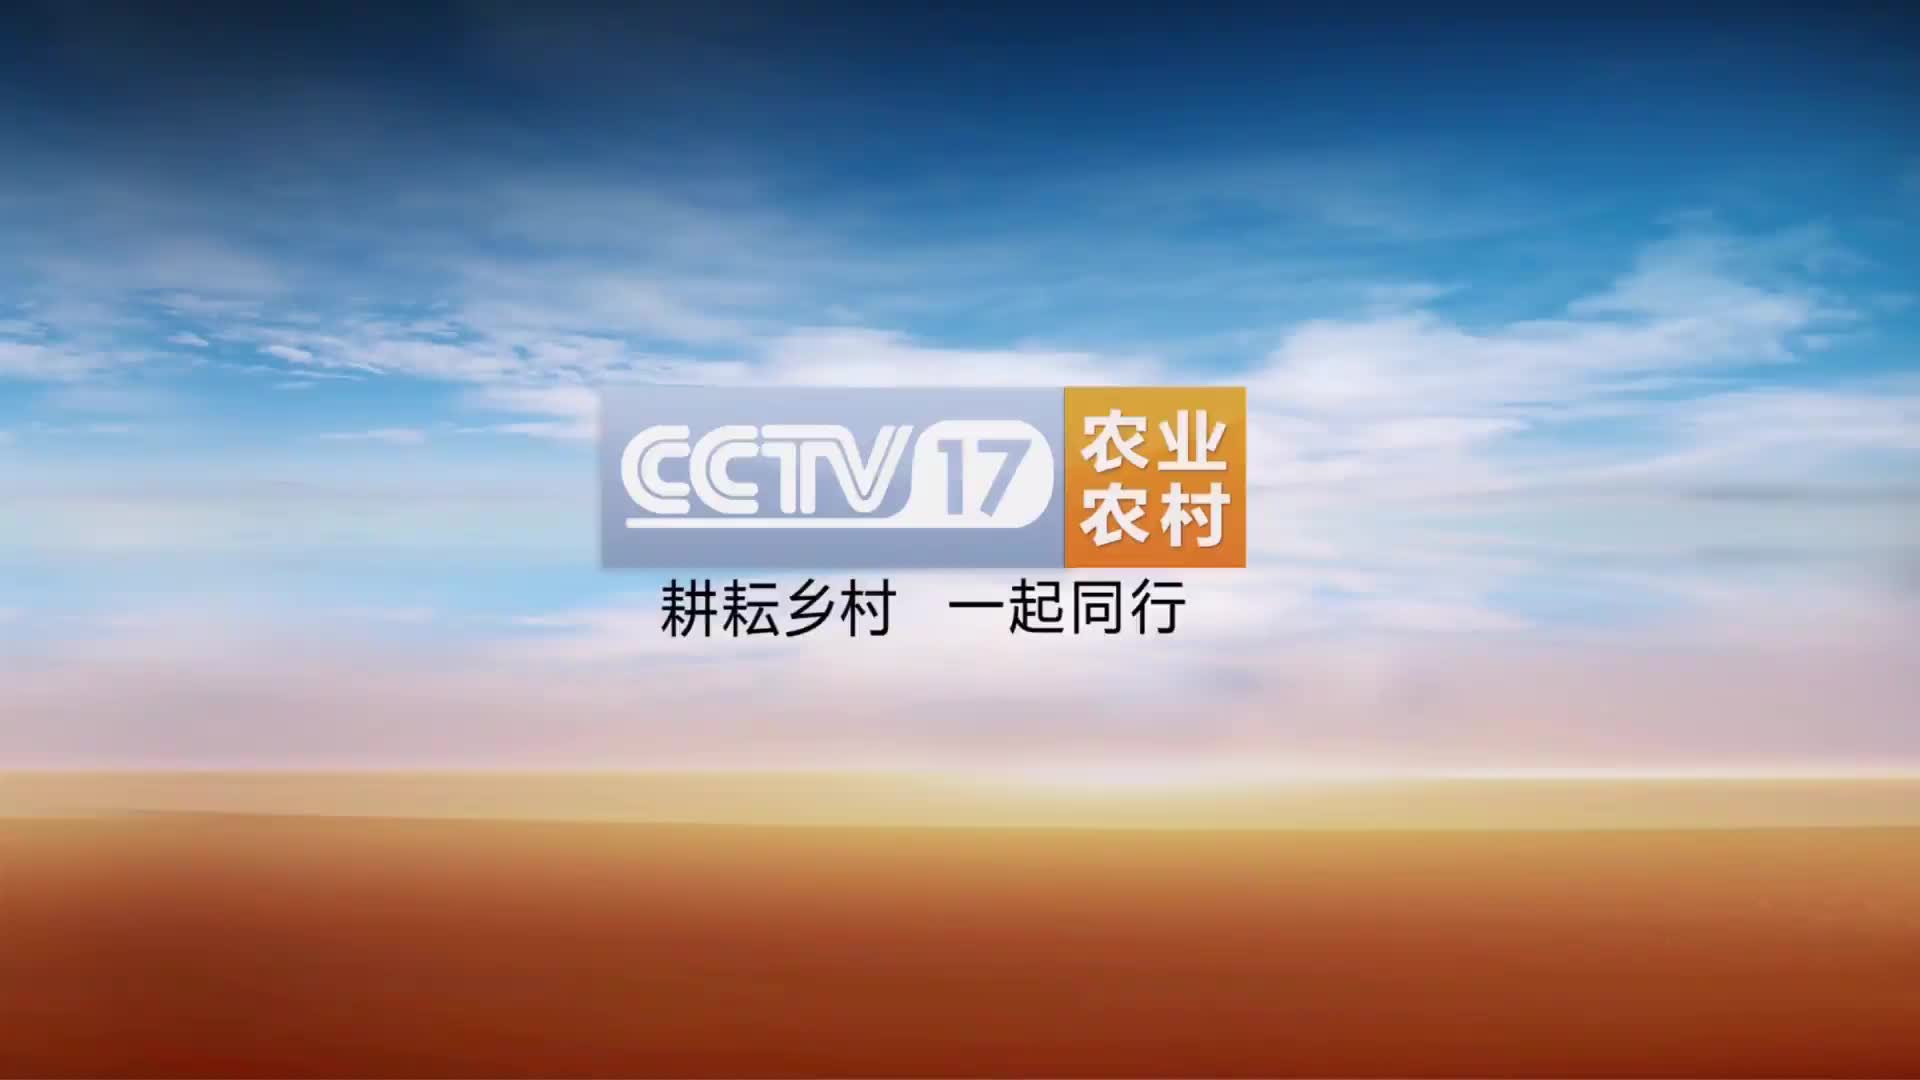 放送文化cctv17农业农村频道扶贫行动栏目片头无台标水印版